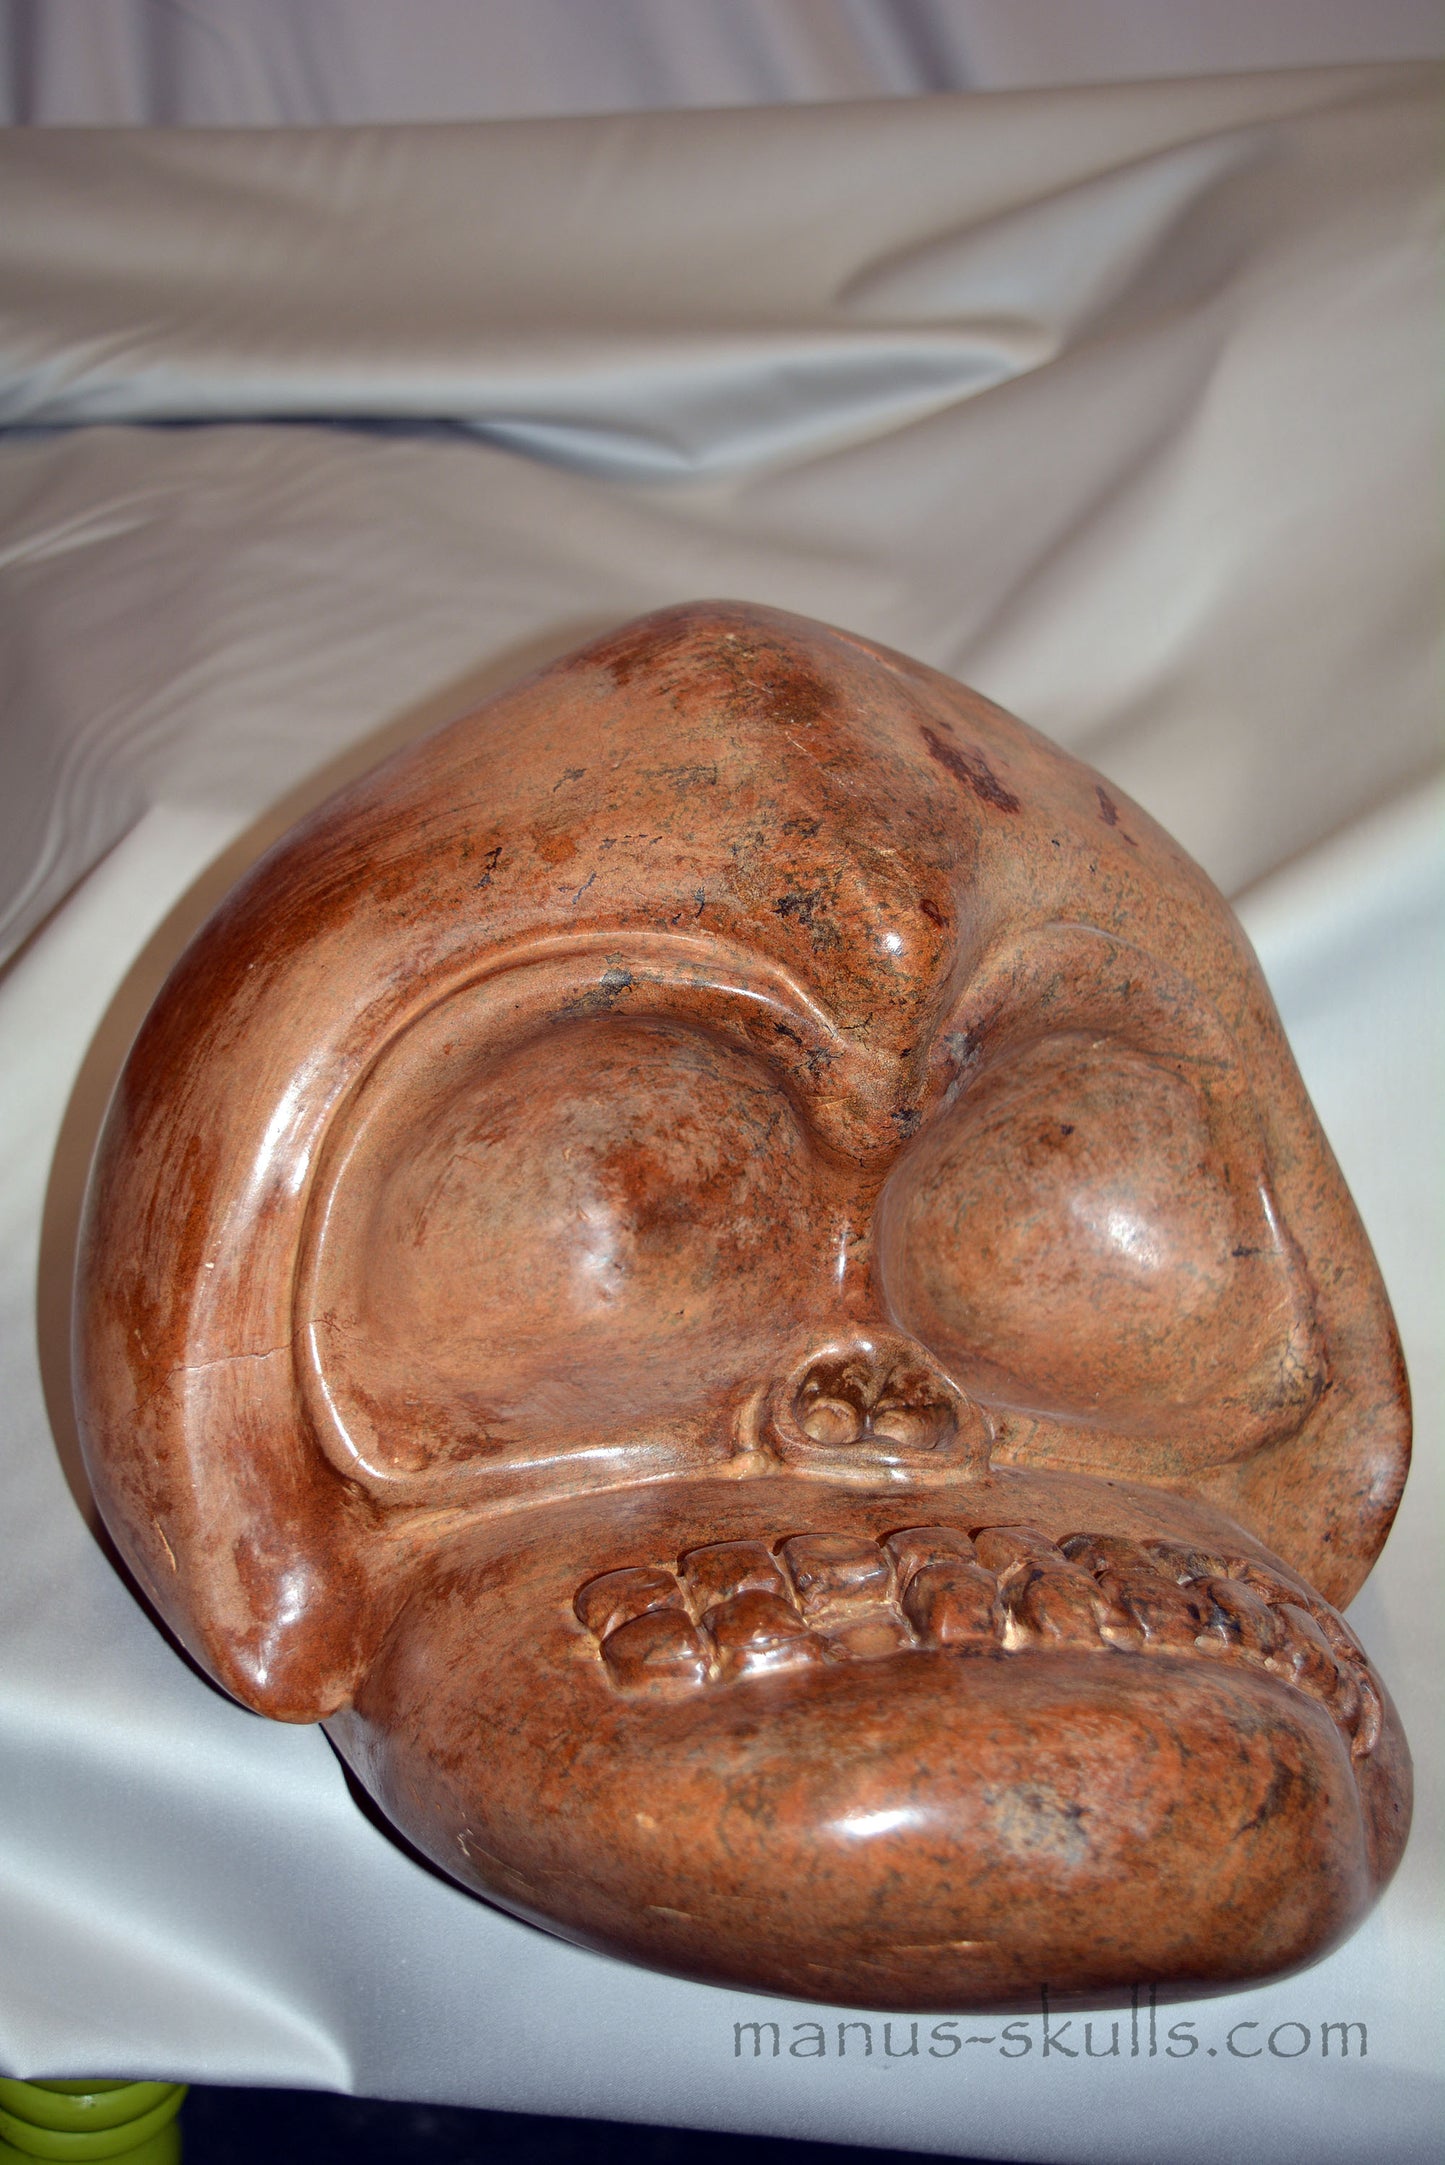 Monumental Steatite Evolian Skull #49